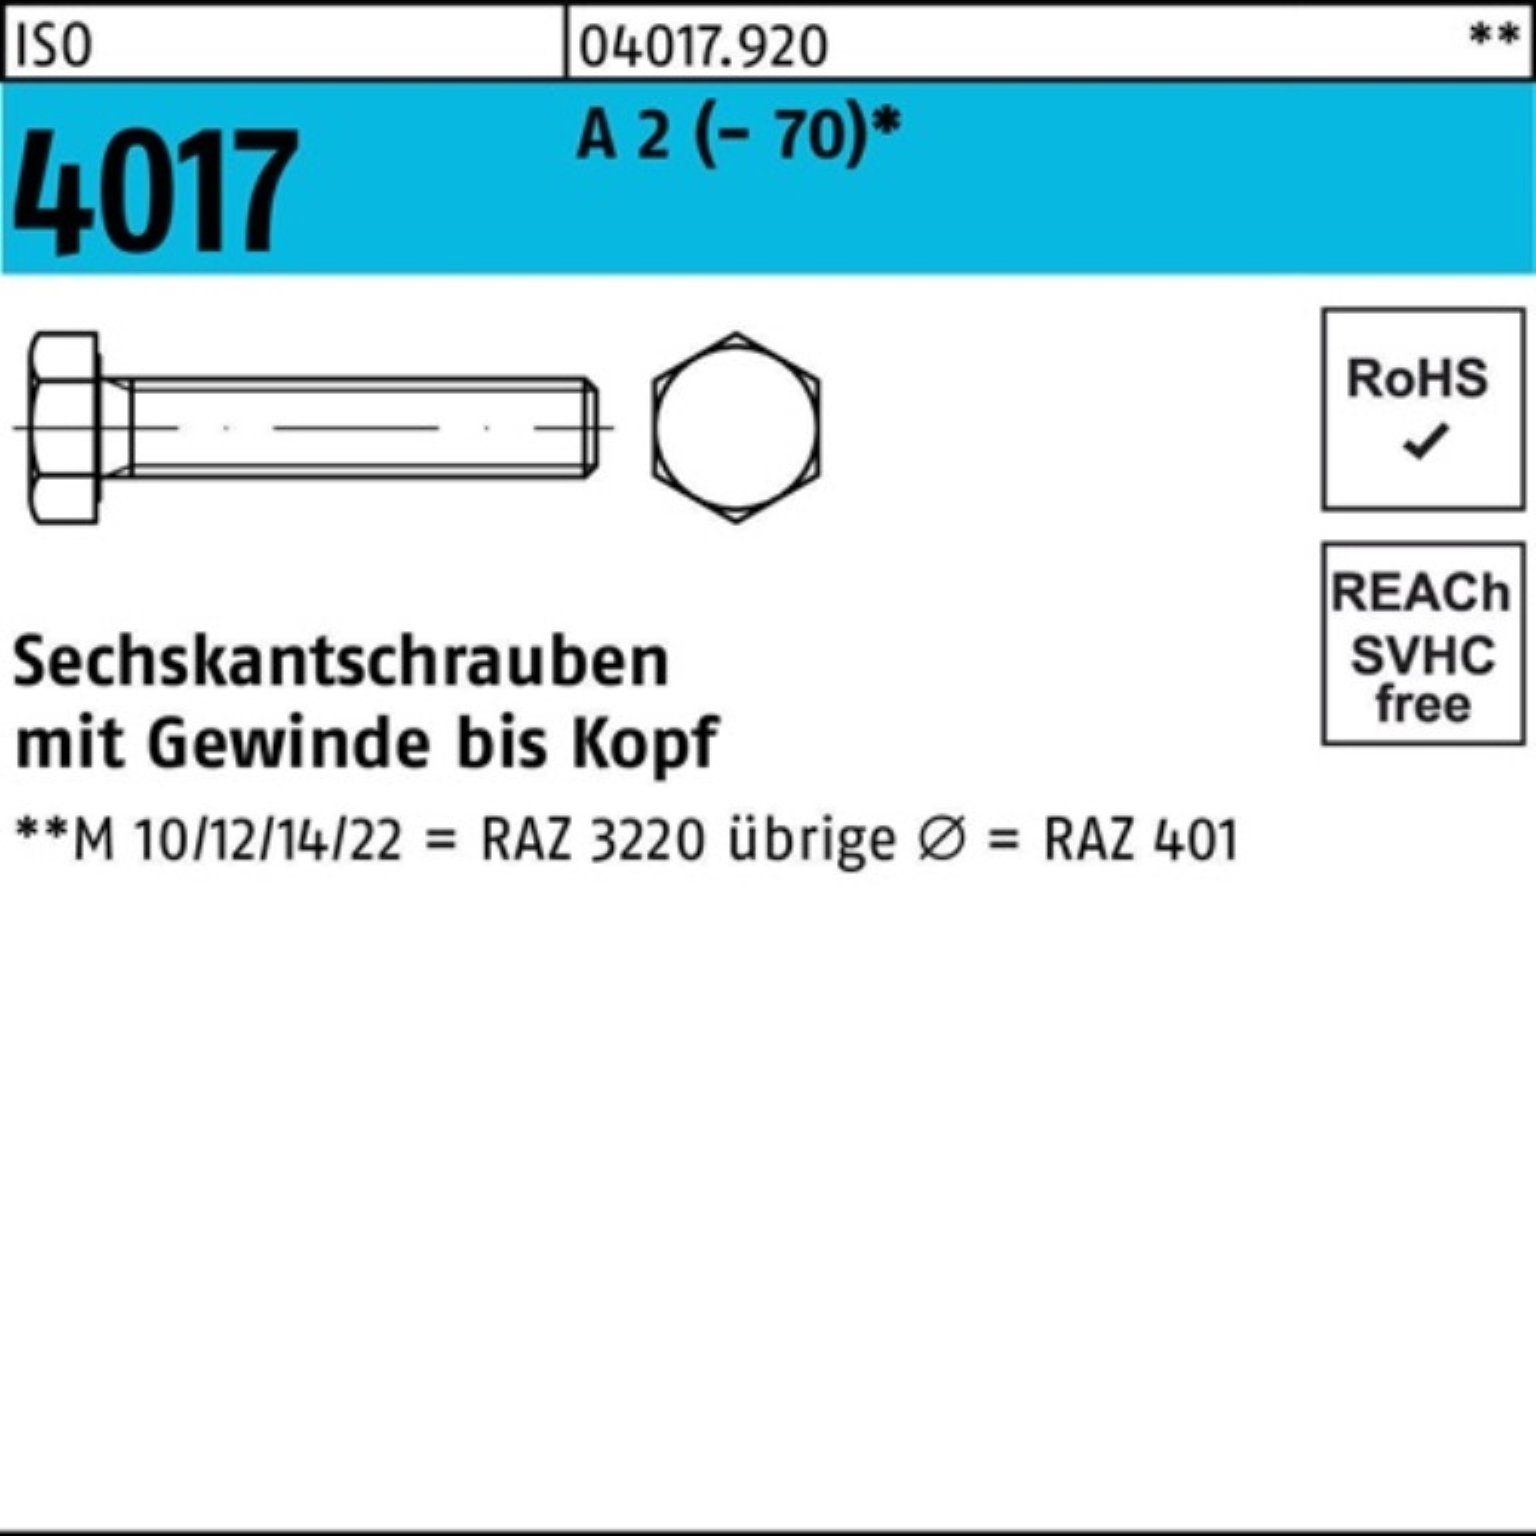 Bufab Sechskantschraube 100er Pack Sechskantschraube ISO 4017 VG M18x 130 A 2 (70) 1 Stück